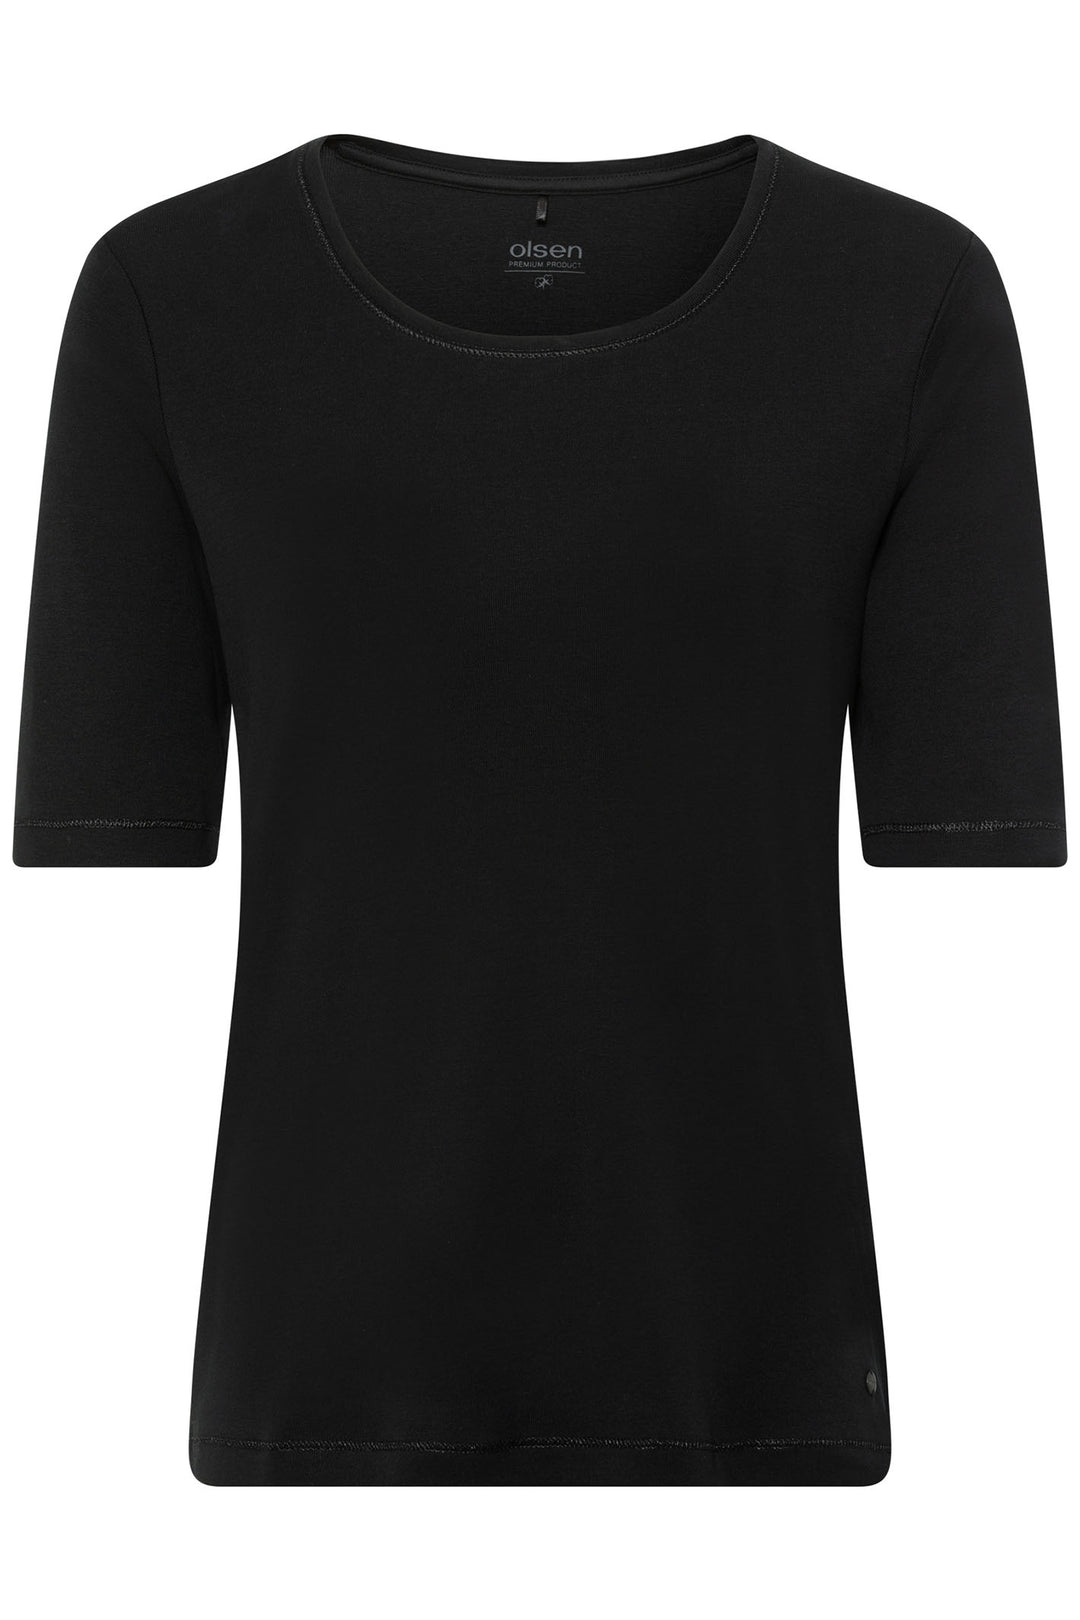 Olsen 11100177 Black T-Shirt - Experience Boutique